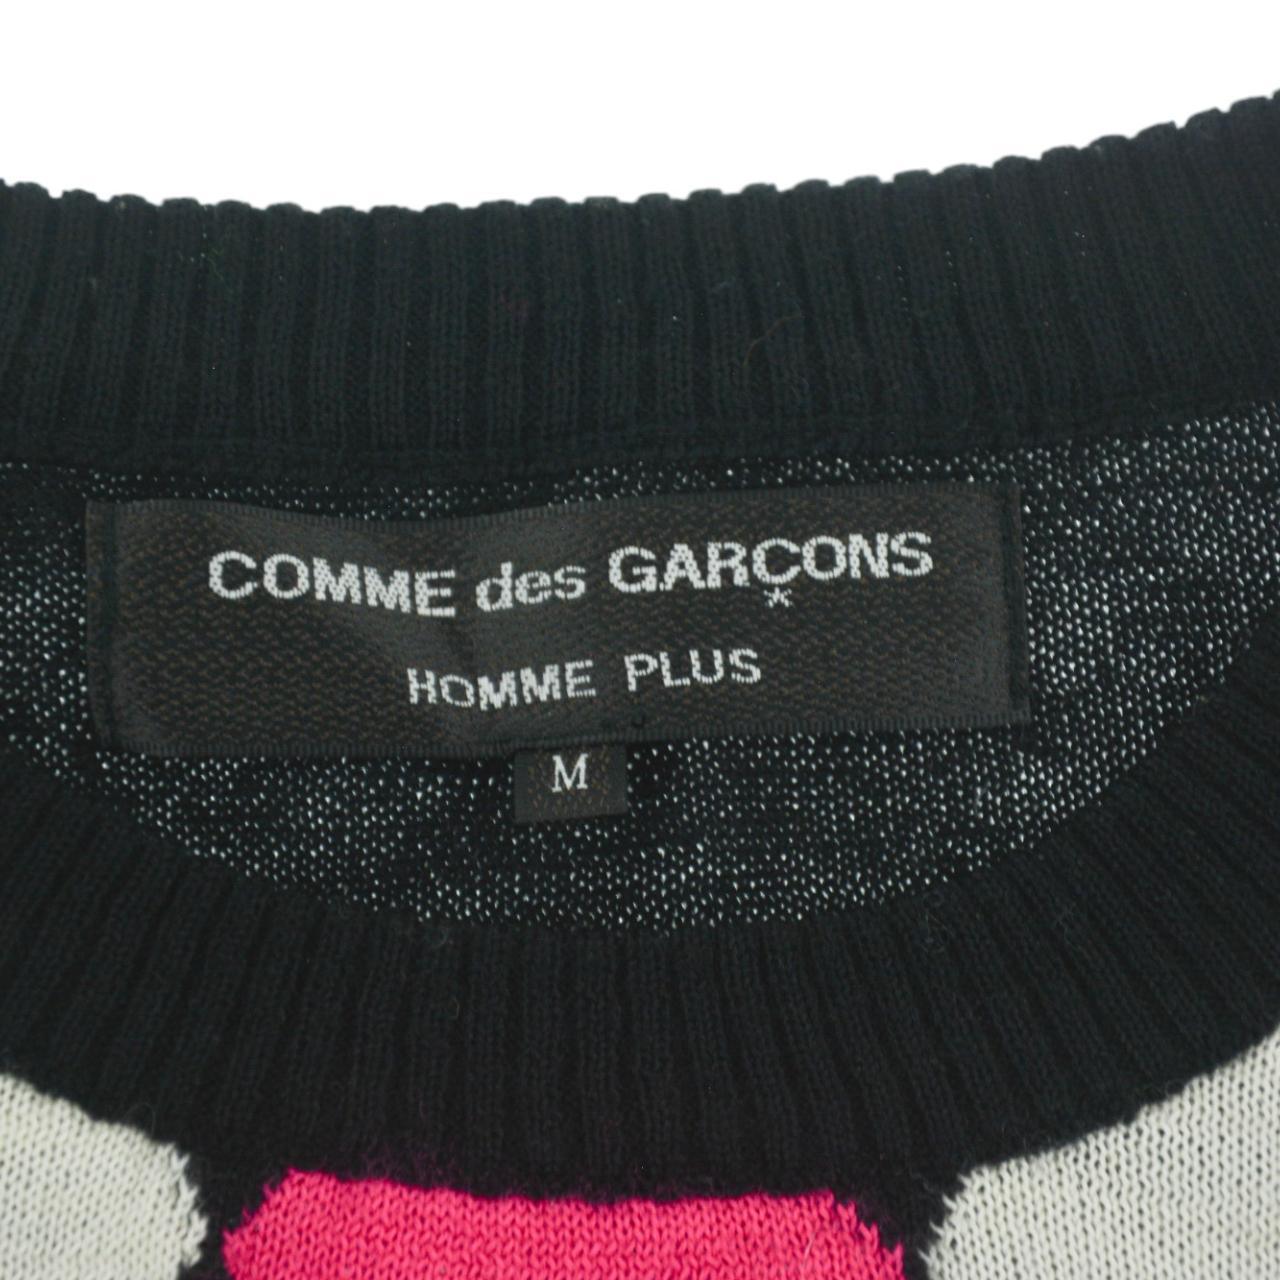 Vintage Comme des Garcons Homme Plus Knit Jumper Size S - Known Source